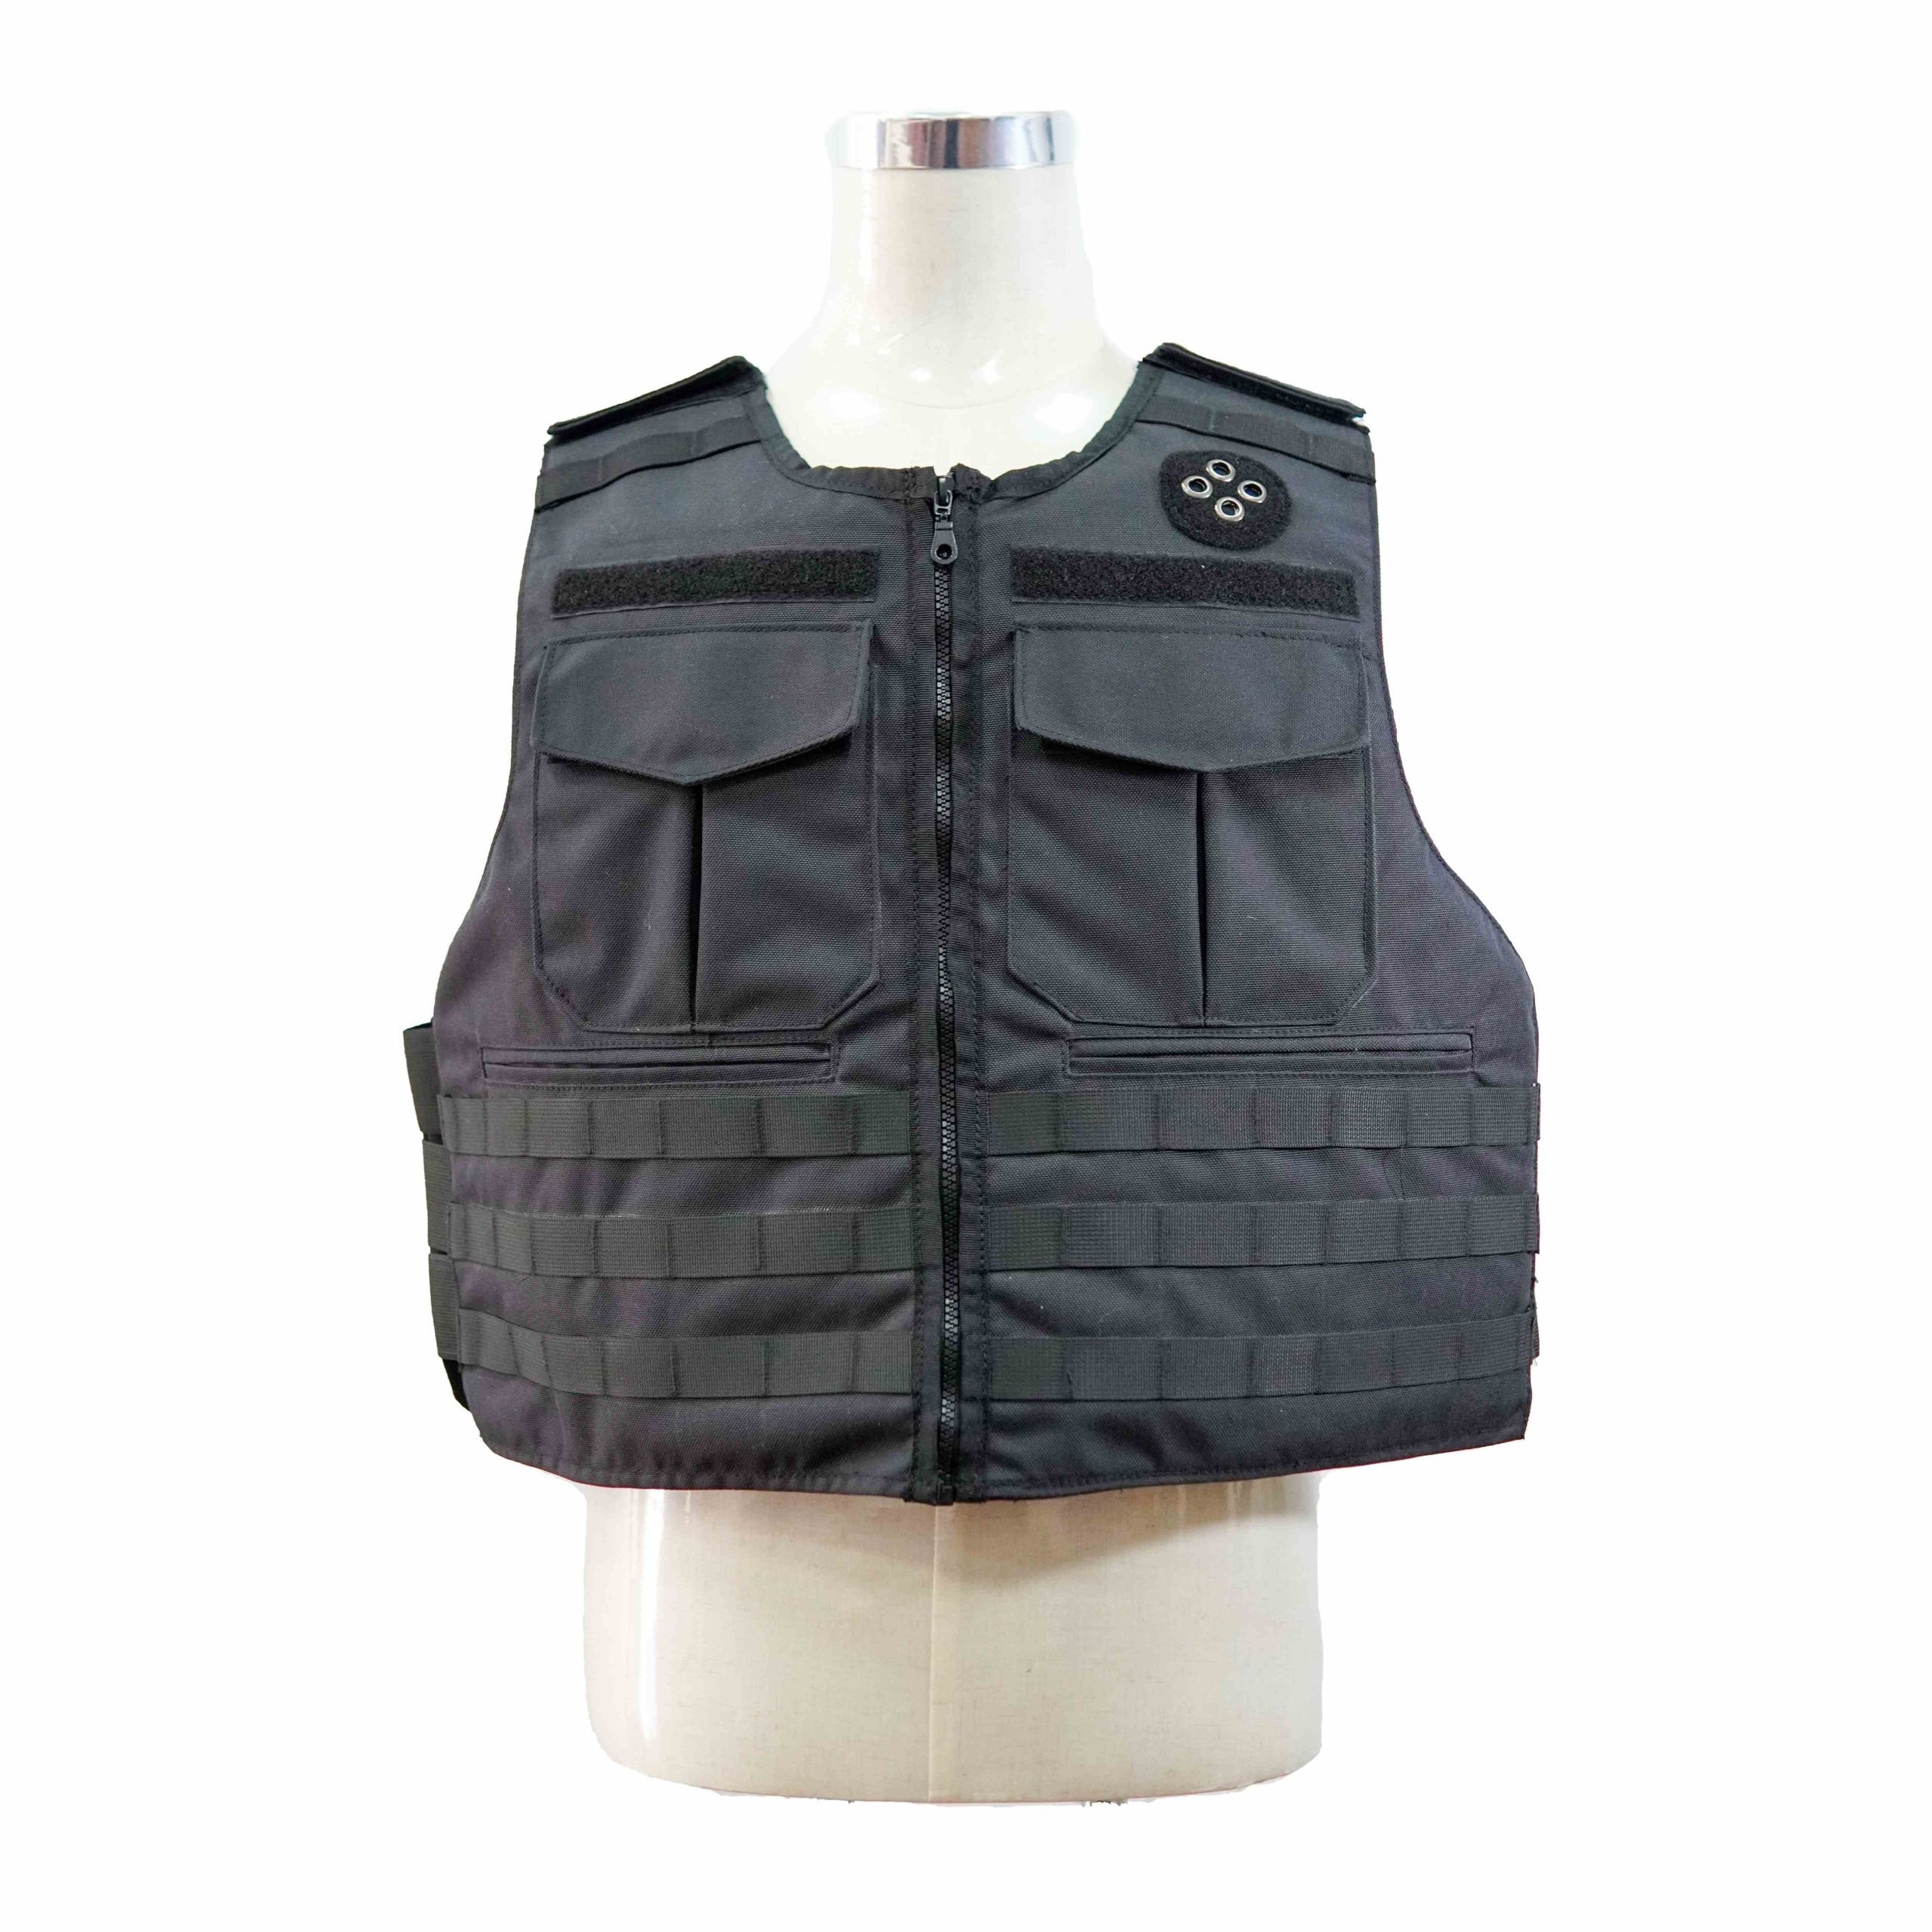 Hwin Bulletproof vest vest BX086-1